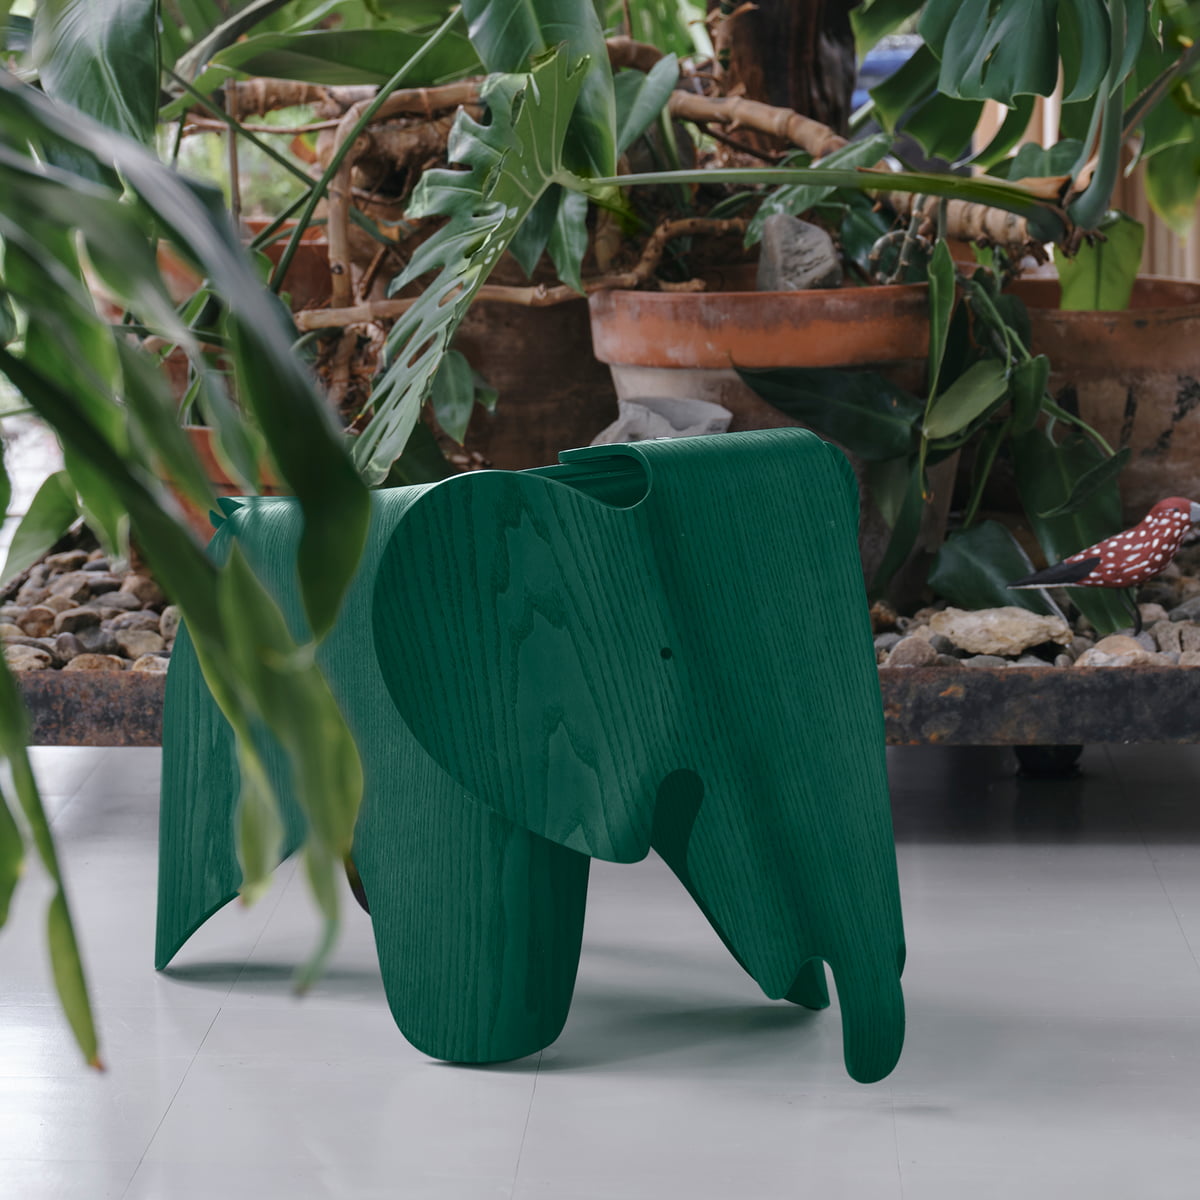 Vitra - Eames Elephant